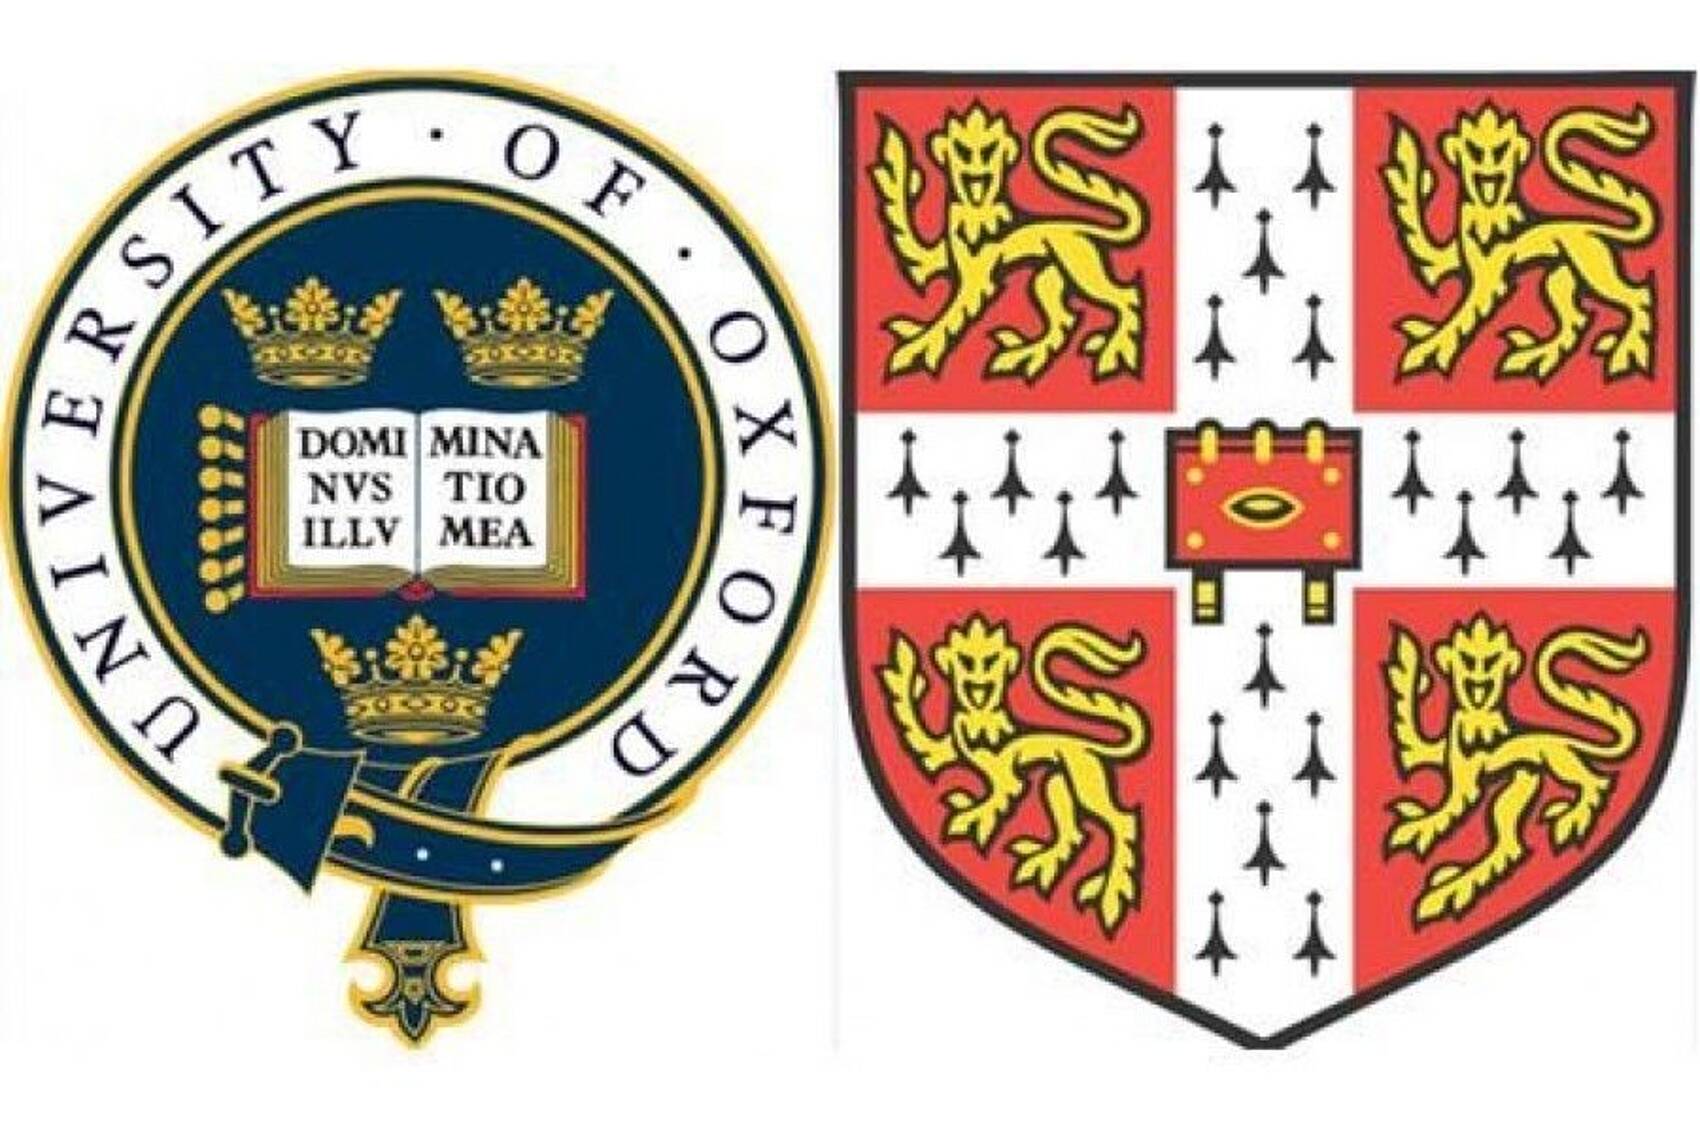 Wappen der Uni Oxford und Uni Cambridge